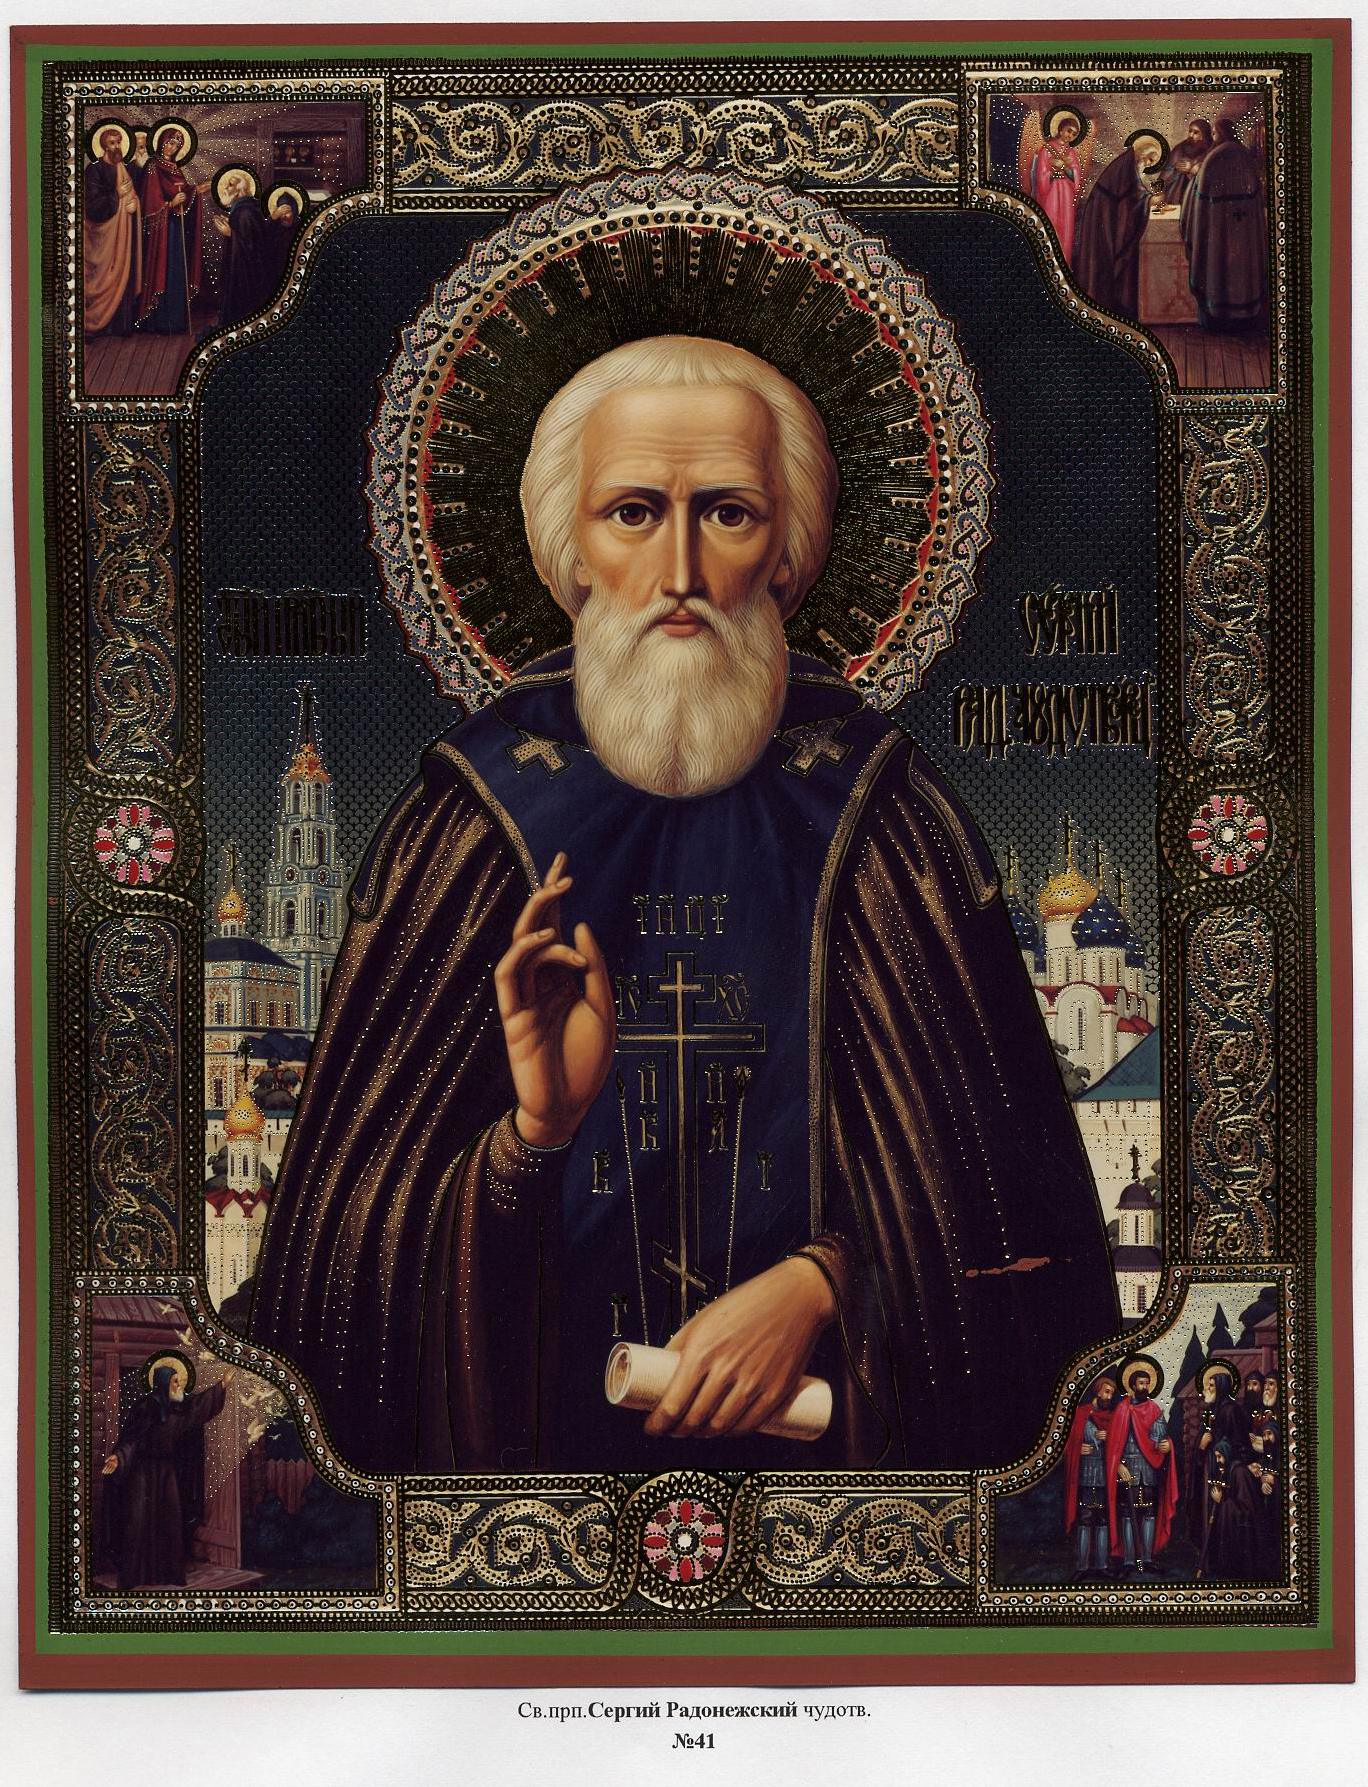 Святые преподобные иконы. Икона Сергия Радонежского.